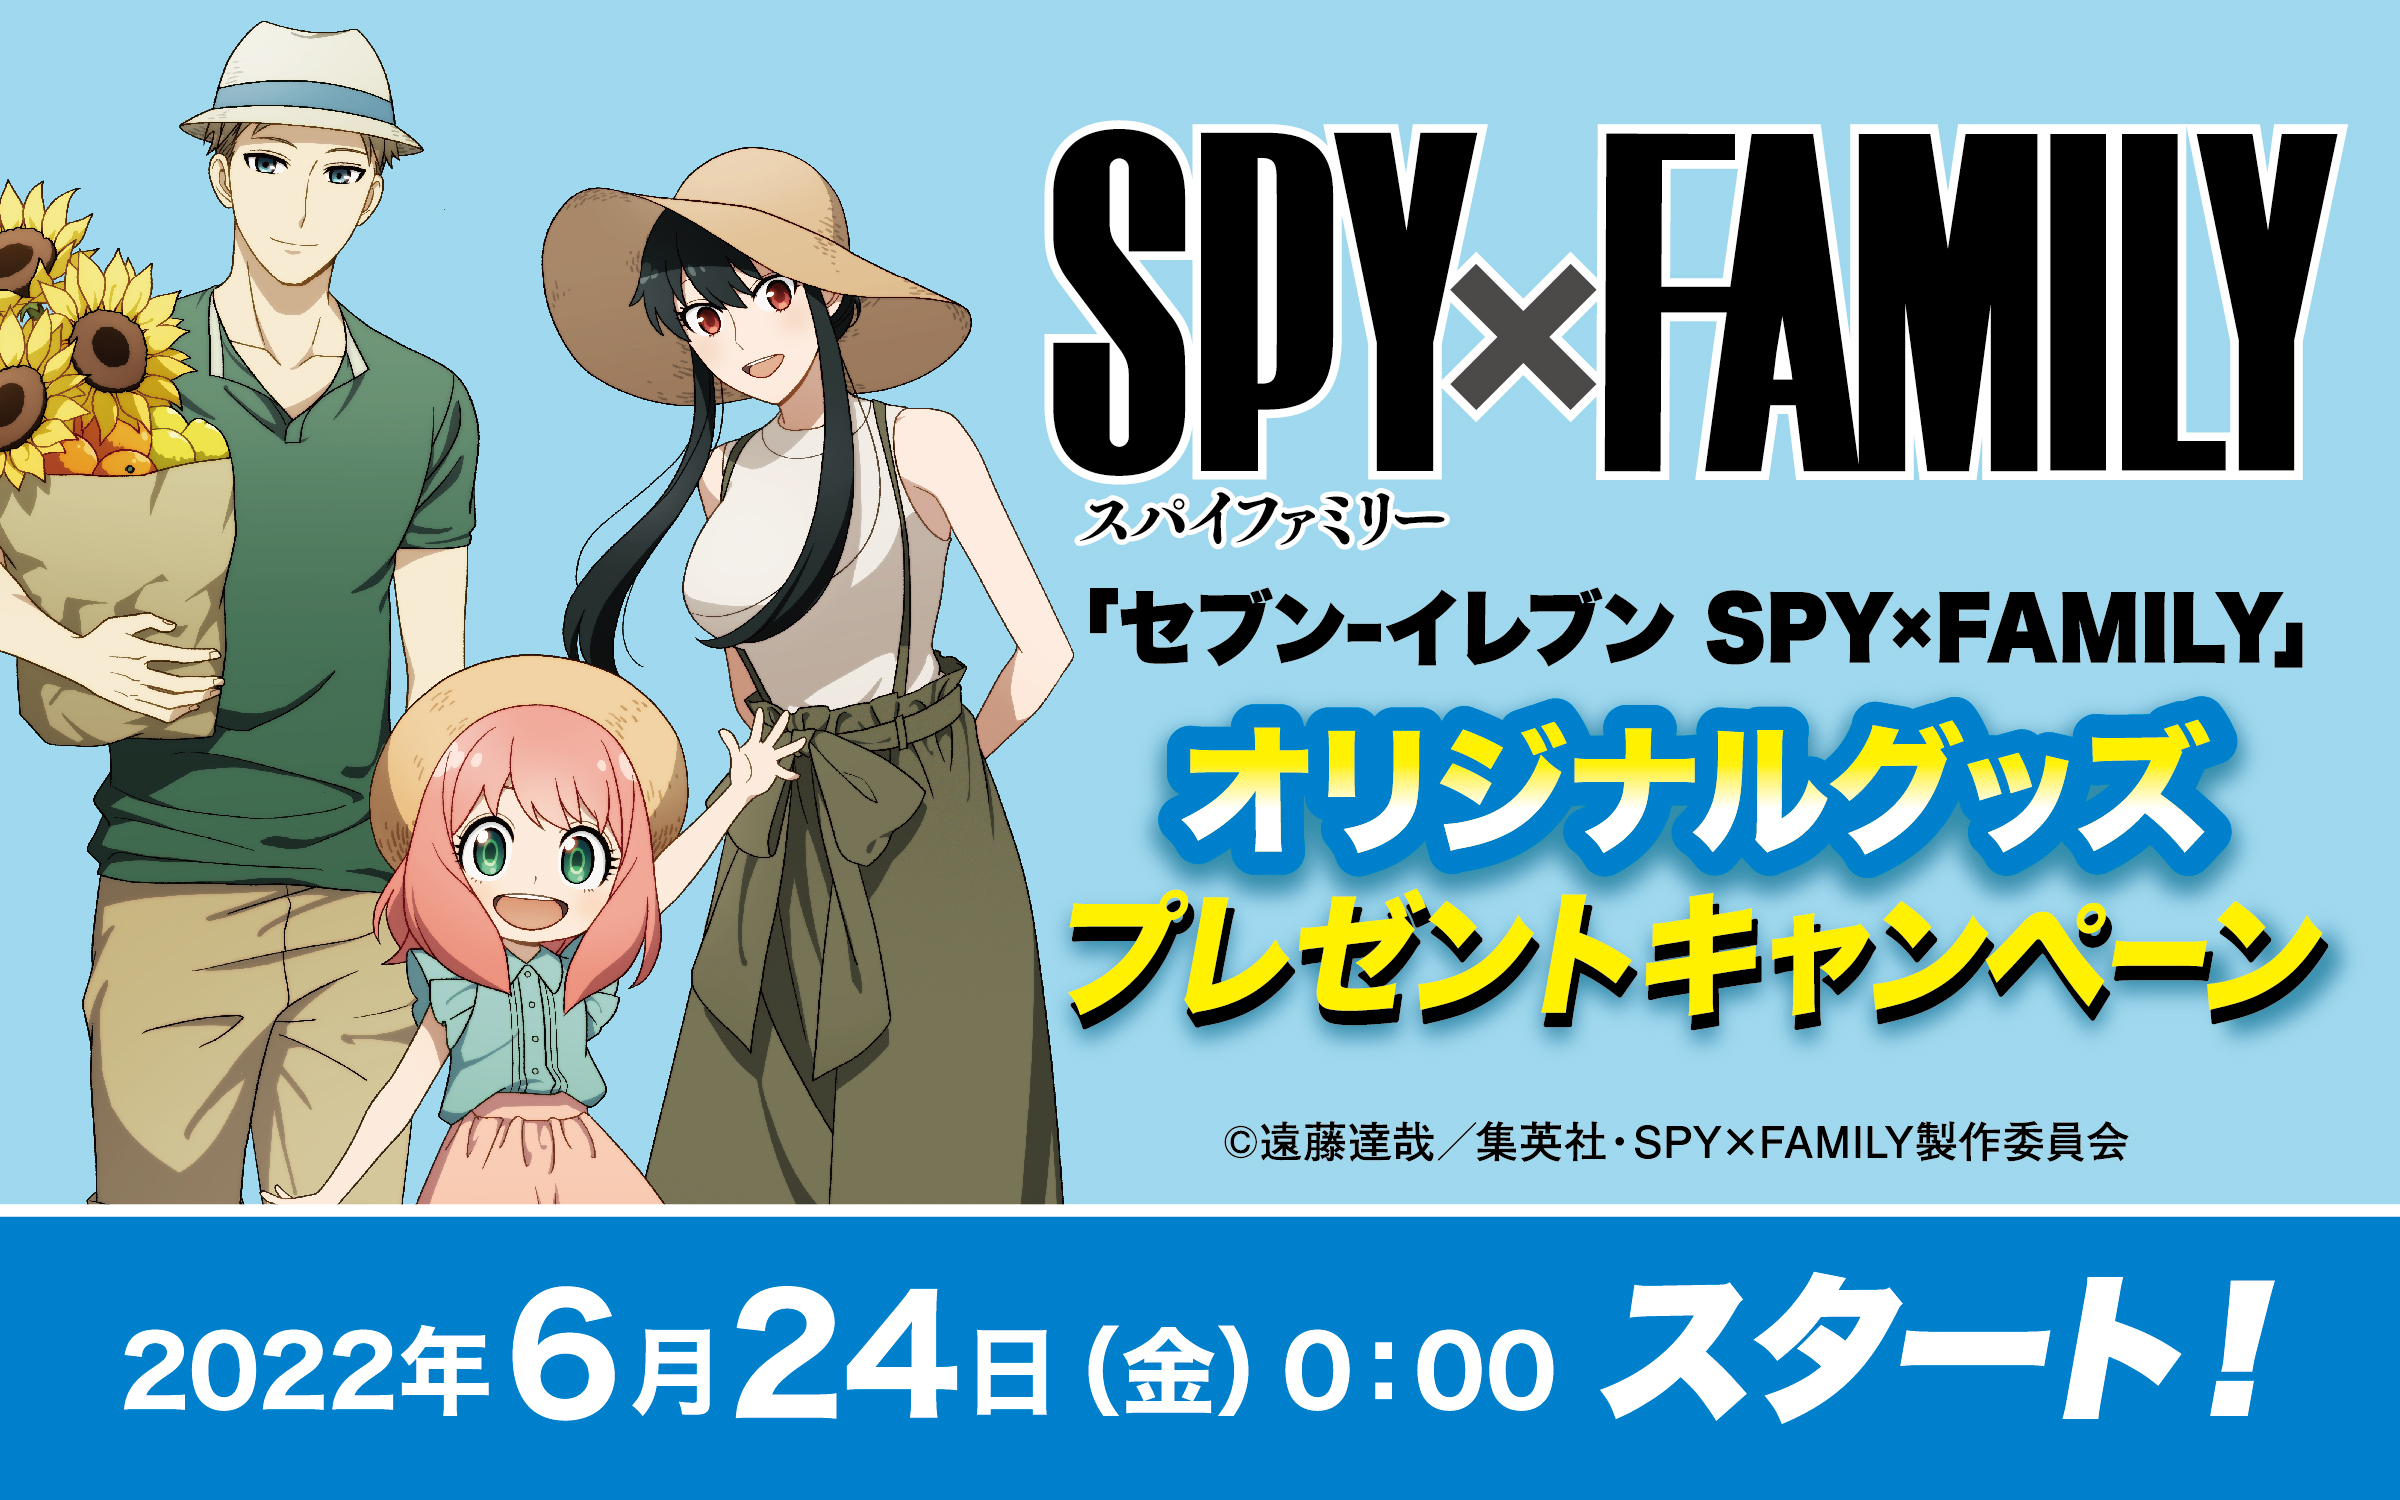 セブン イレブン Spy Family オリジナルグッズプレゼントキャンペーン開催 News Tvアニメ Spy Family